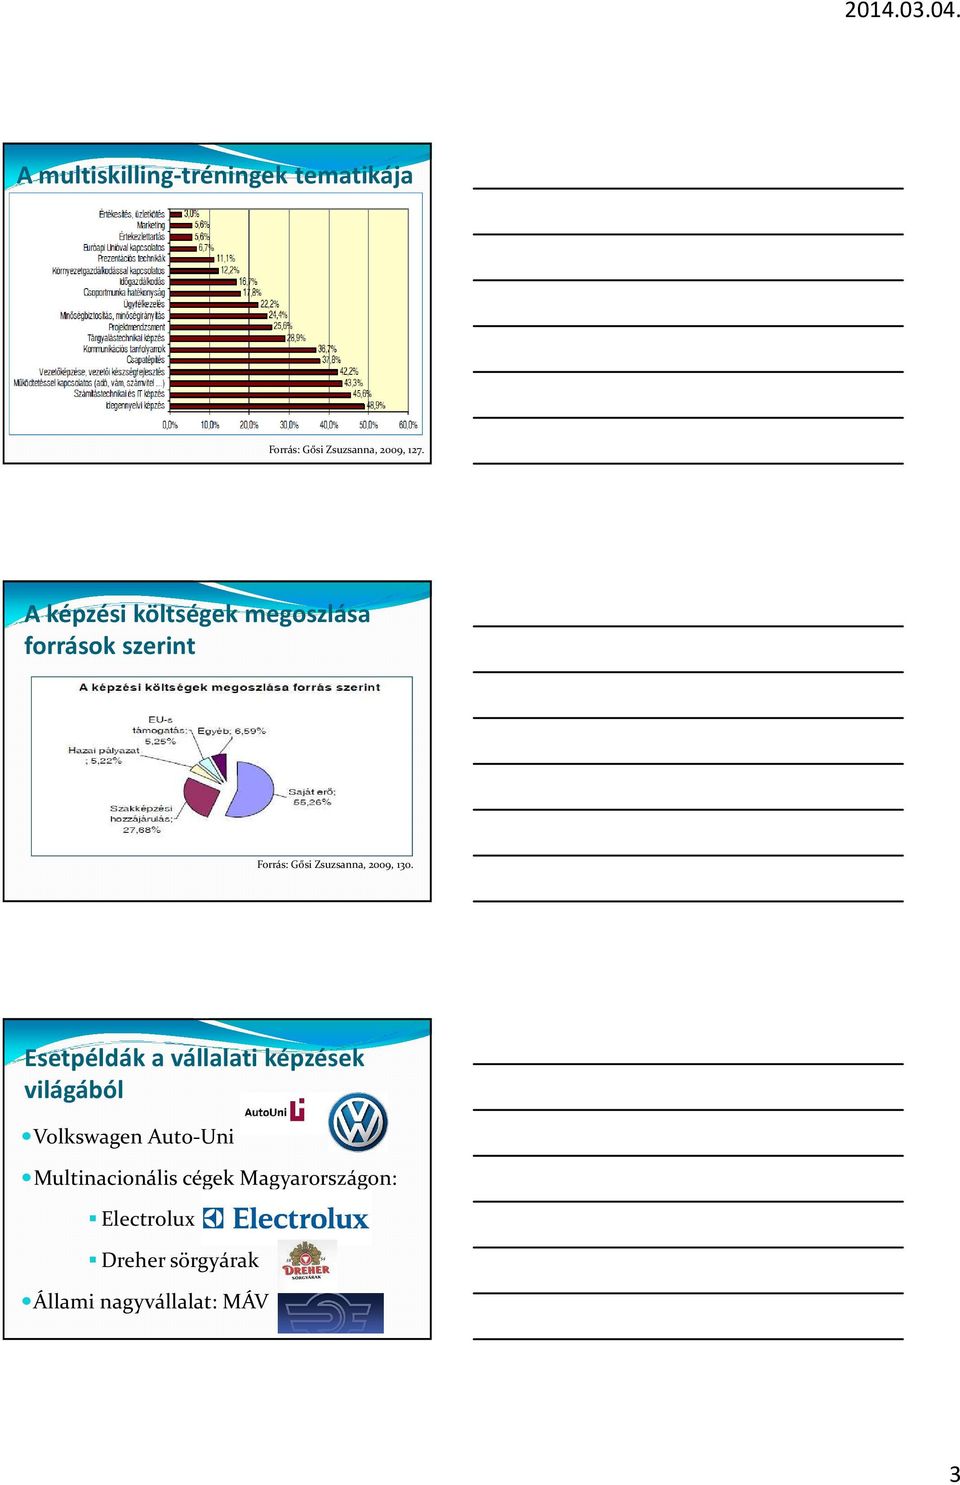 130. Esetpéldák a vállalati képzések világából Volkswagen Auto-Uni